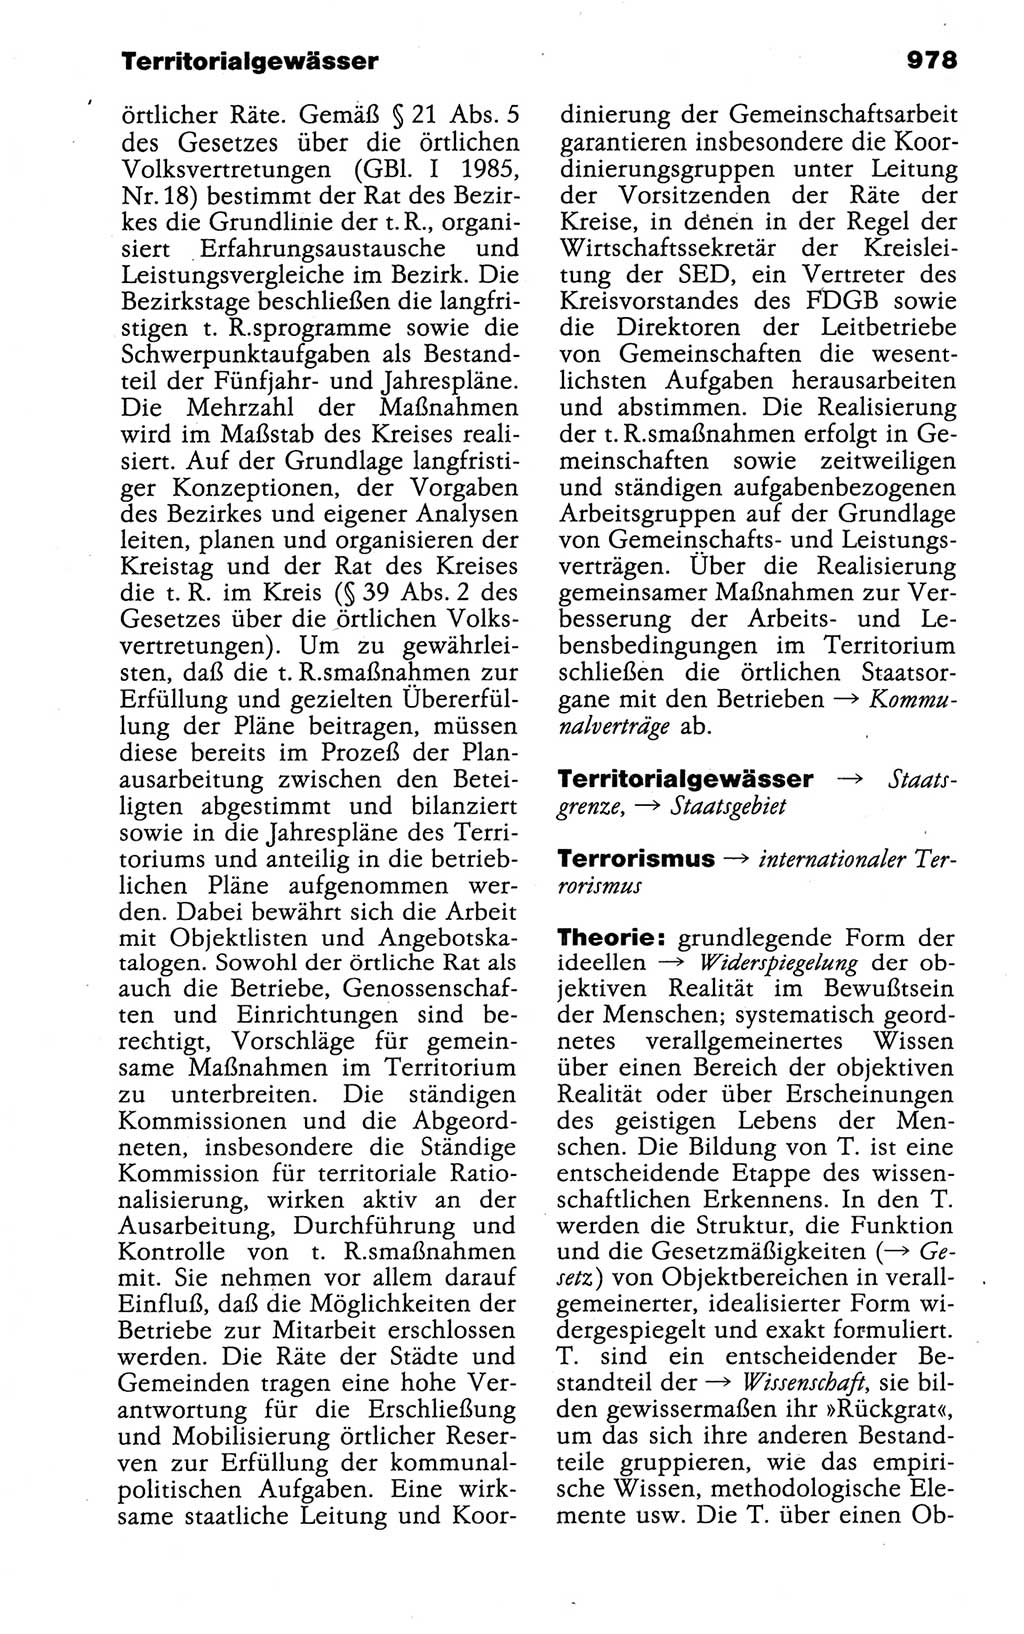 Kleines politisches Wörterbuch [Deutsche Demokratische Republik (DDR)] 1988, Seite 978 (Kl. pol. Wb. DDR 1988, S. 978)